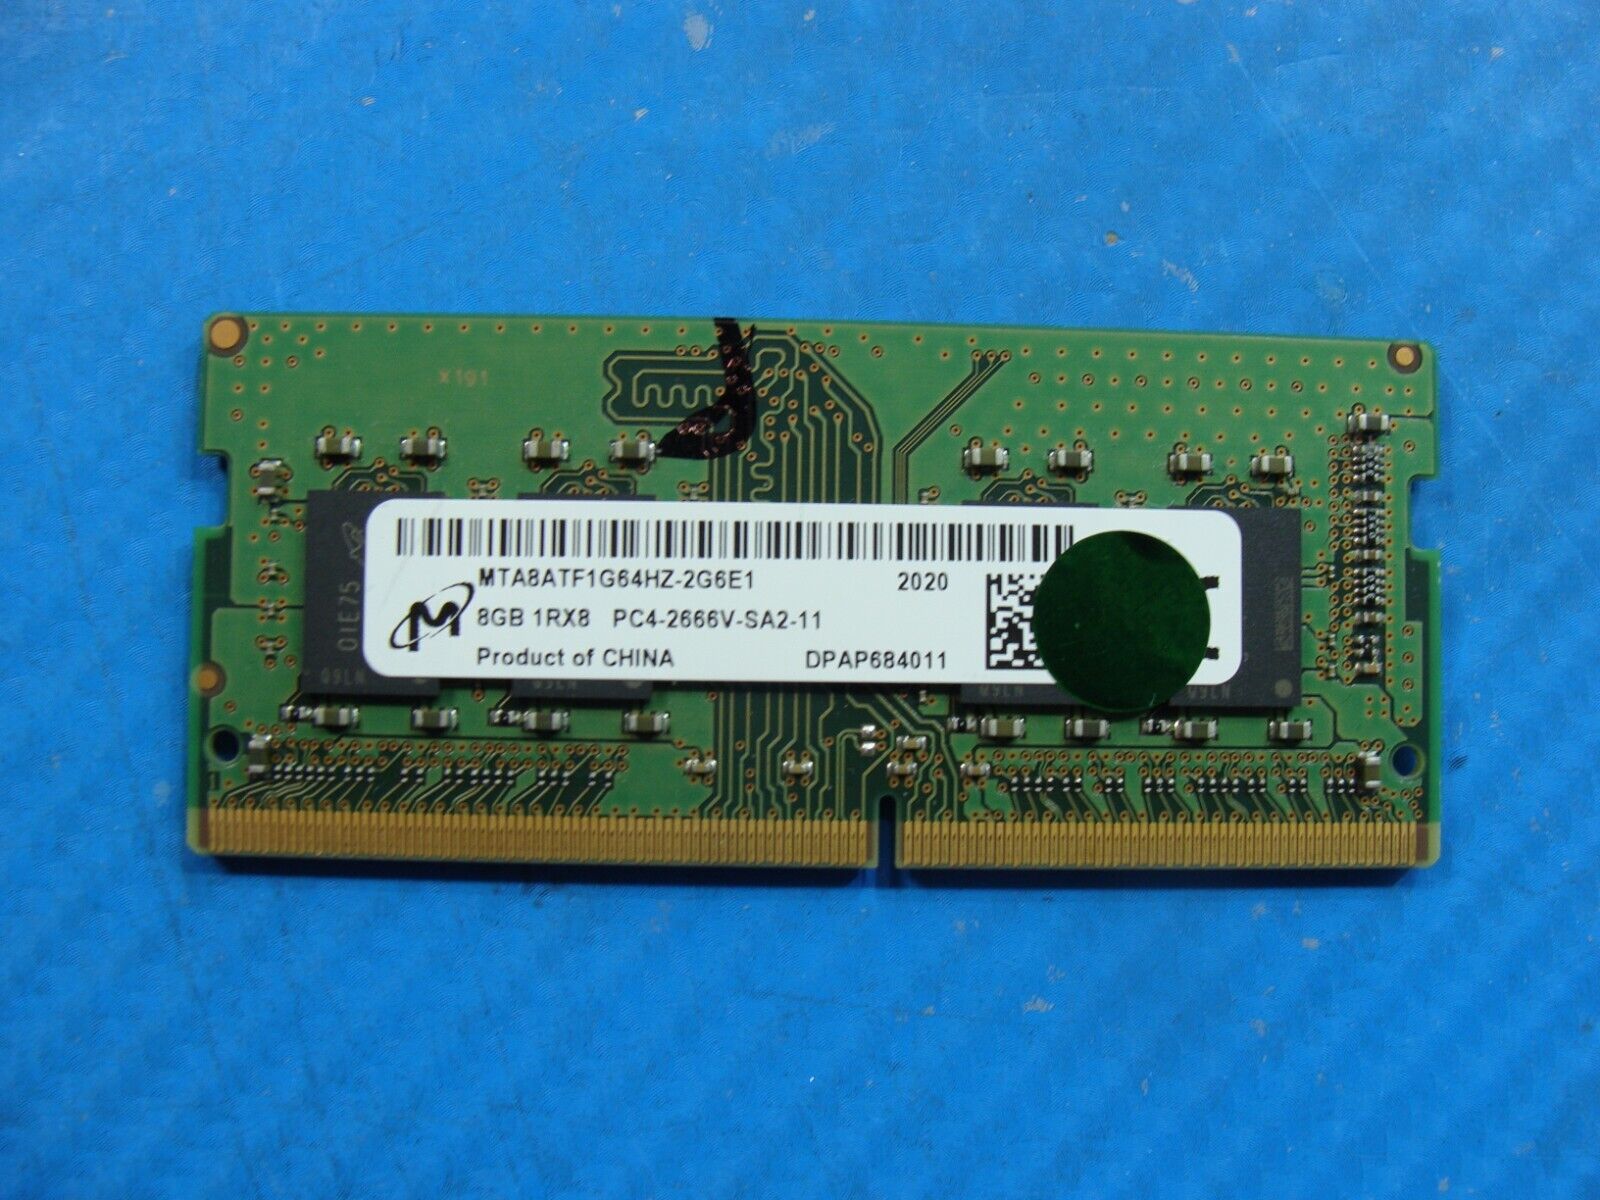 Dell 7300 Micron 8GB 1Rx8 PC4-2666V Memory RAM SO-DIMM MTA8ATF1G64HZ-2G6E1